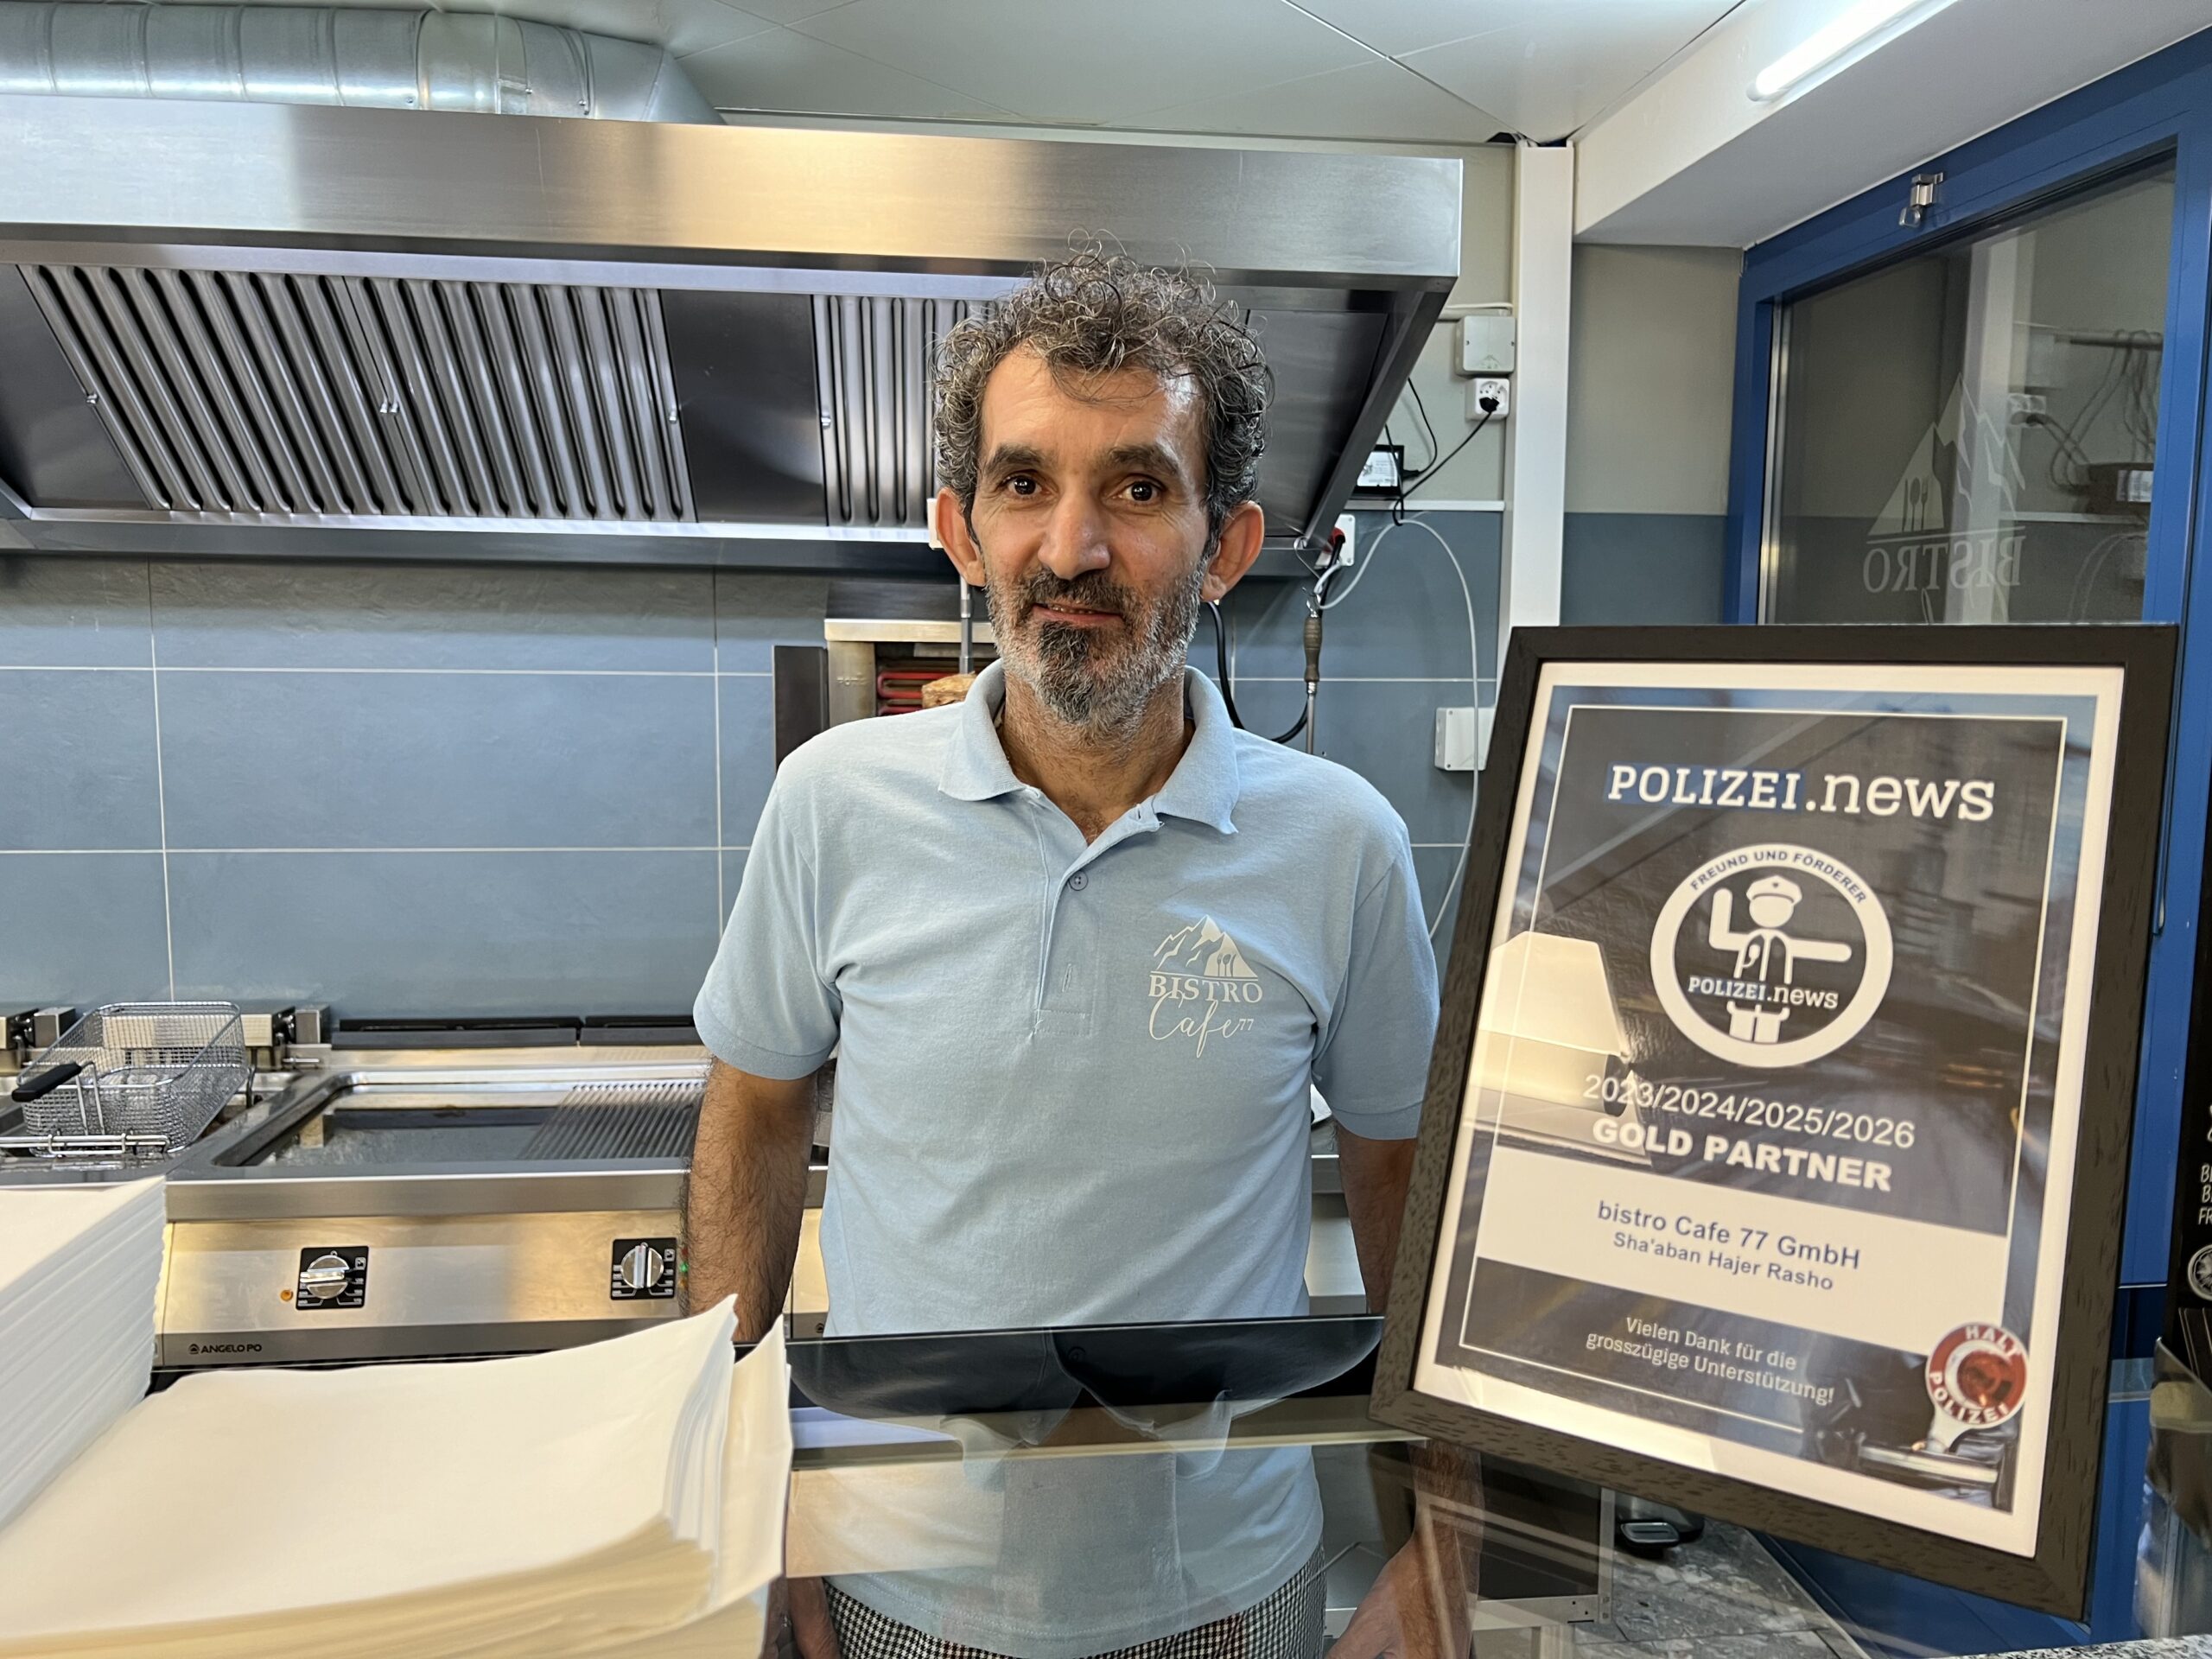 Sha'aban Hajer Rasho, Inhaber der bistro Cafe 77 GmbH, mit Gold Partner-Urkunde von Polizei.news (Bild: © Philipp Ochsner)